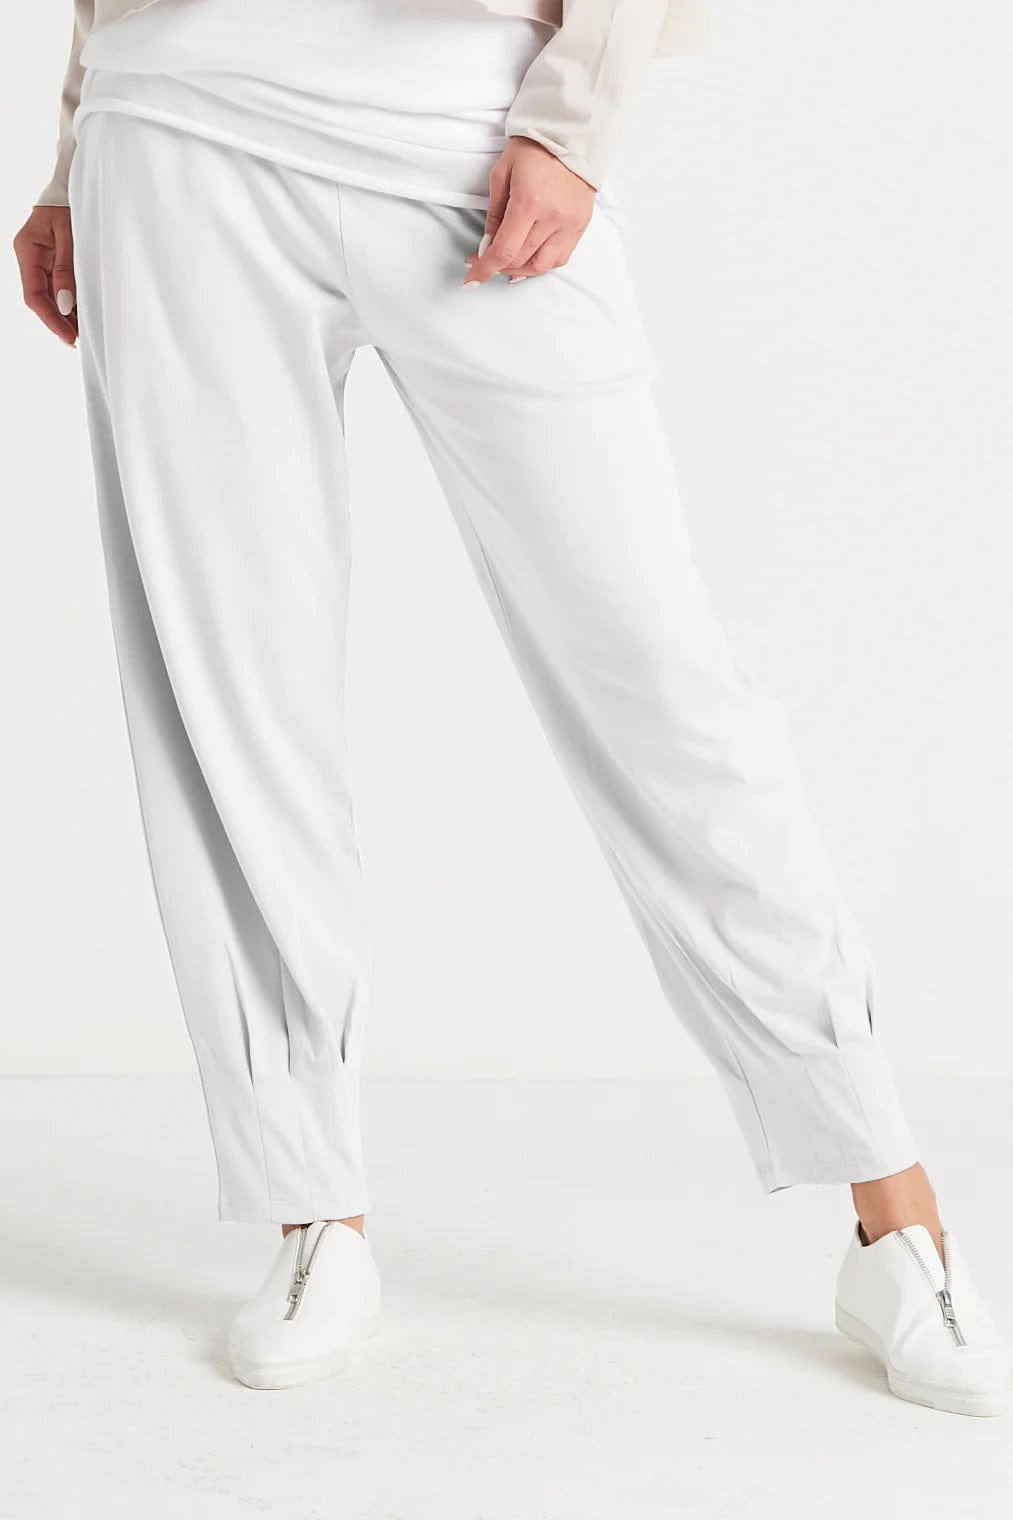 PLANET by Lauren G Women's Pants White / 1 Pima Cotton Pinched Pleat Pants